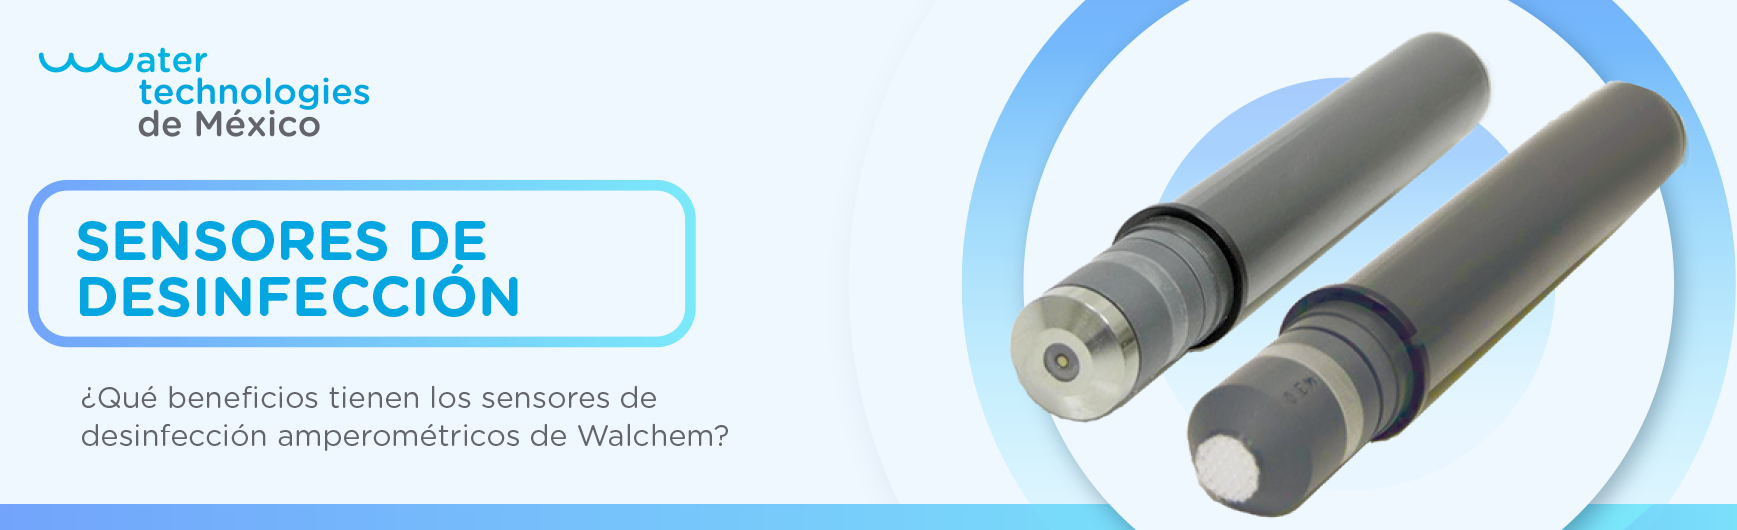 ¿Qué beneficios tienen los sensores de desinfección amperométricos de Walchem?